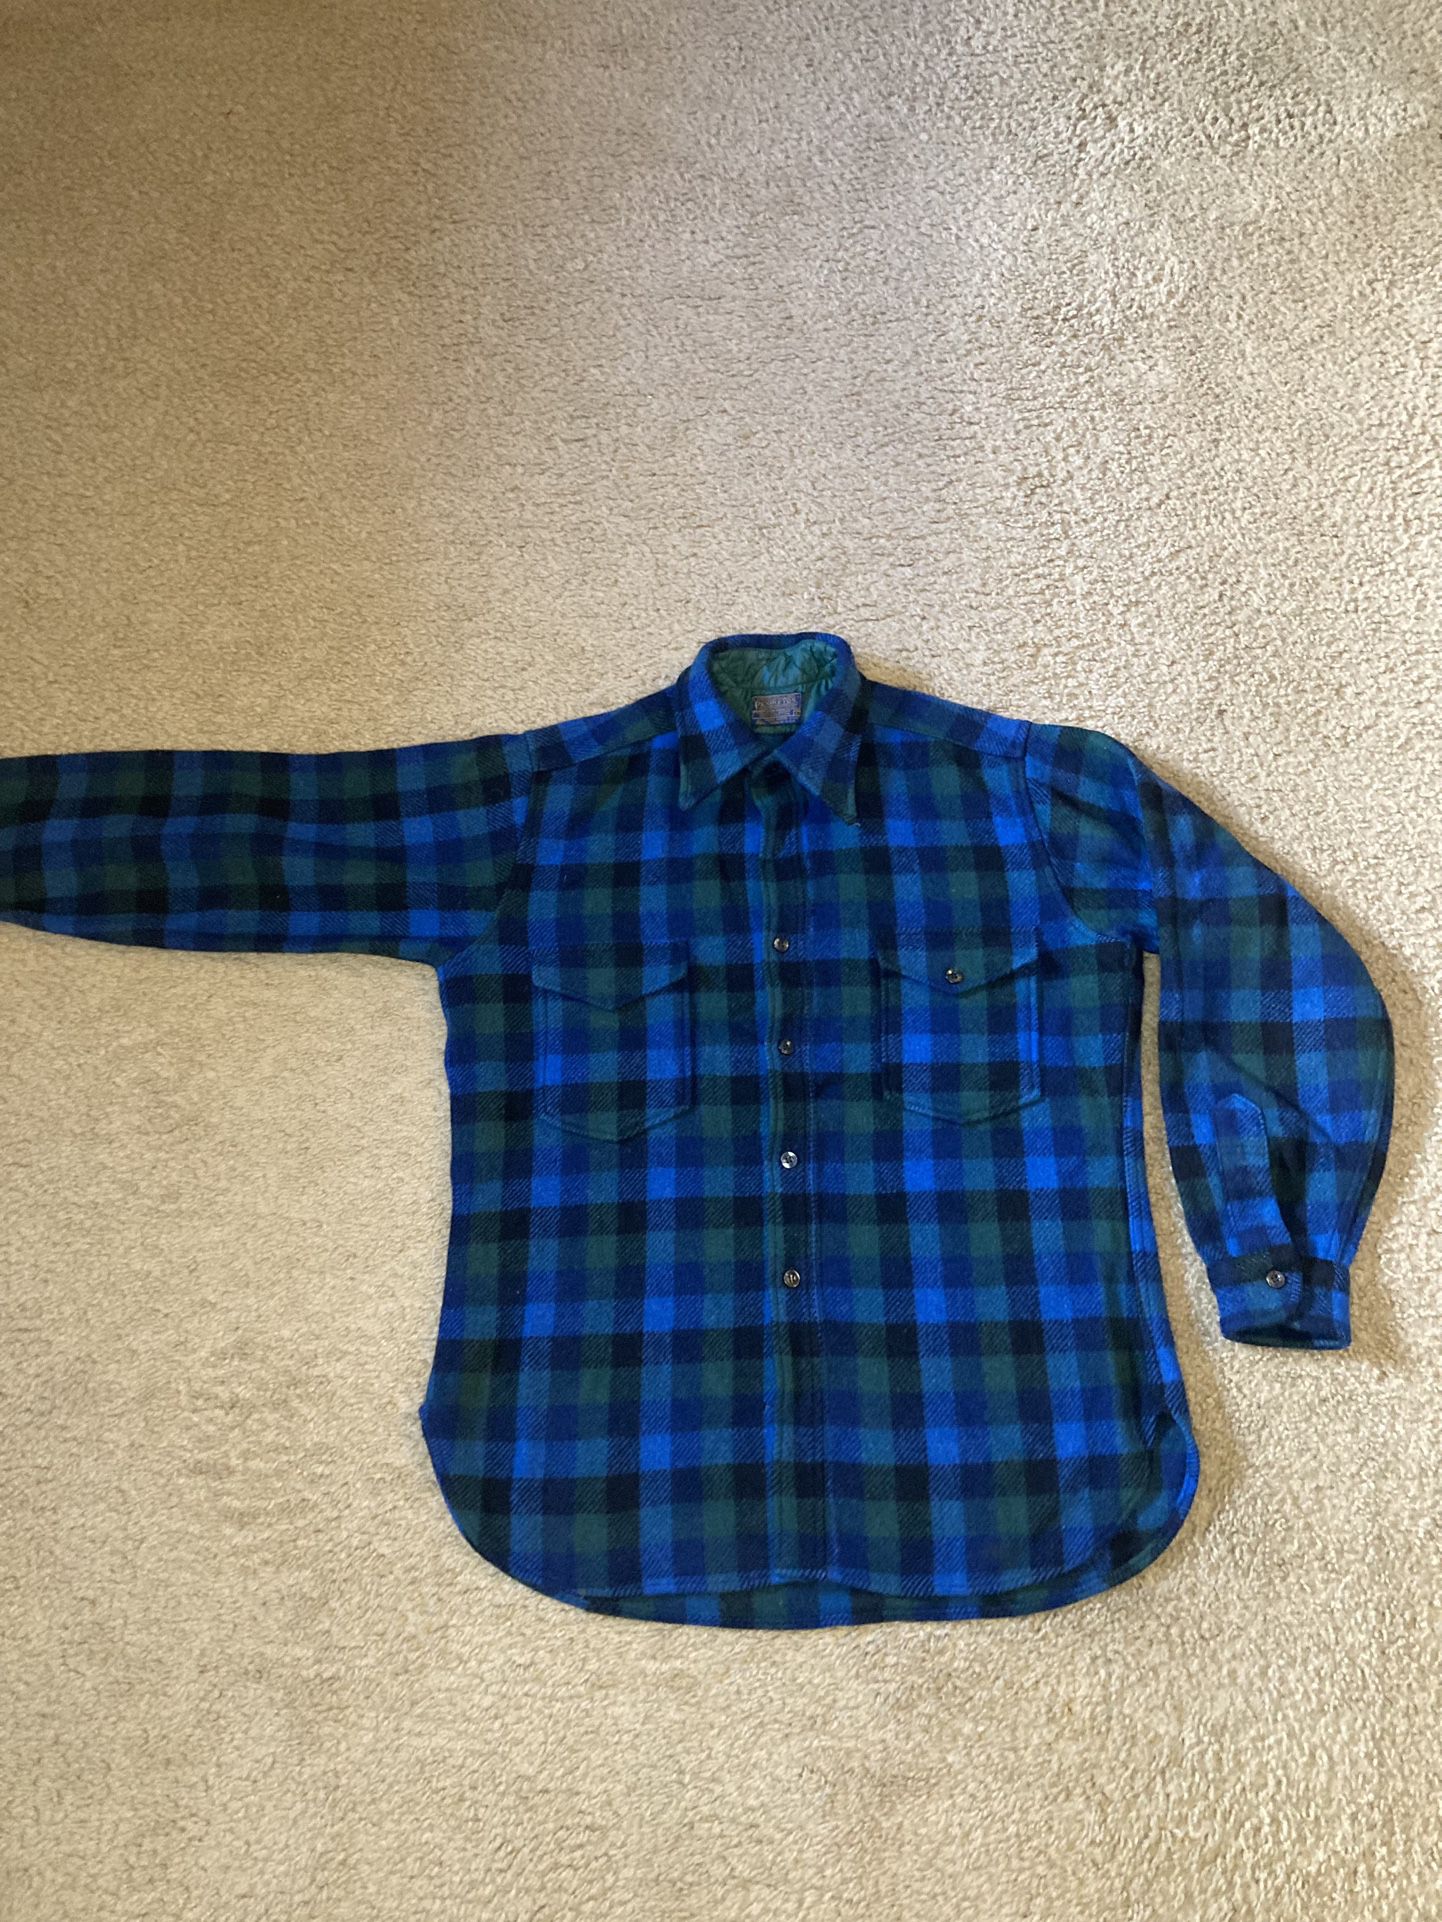 Vintage Pendleton 100% wool thick shirt/jacket large 